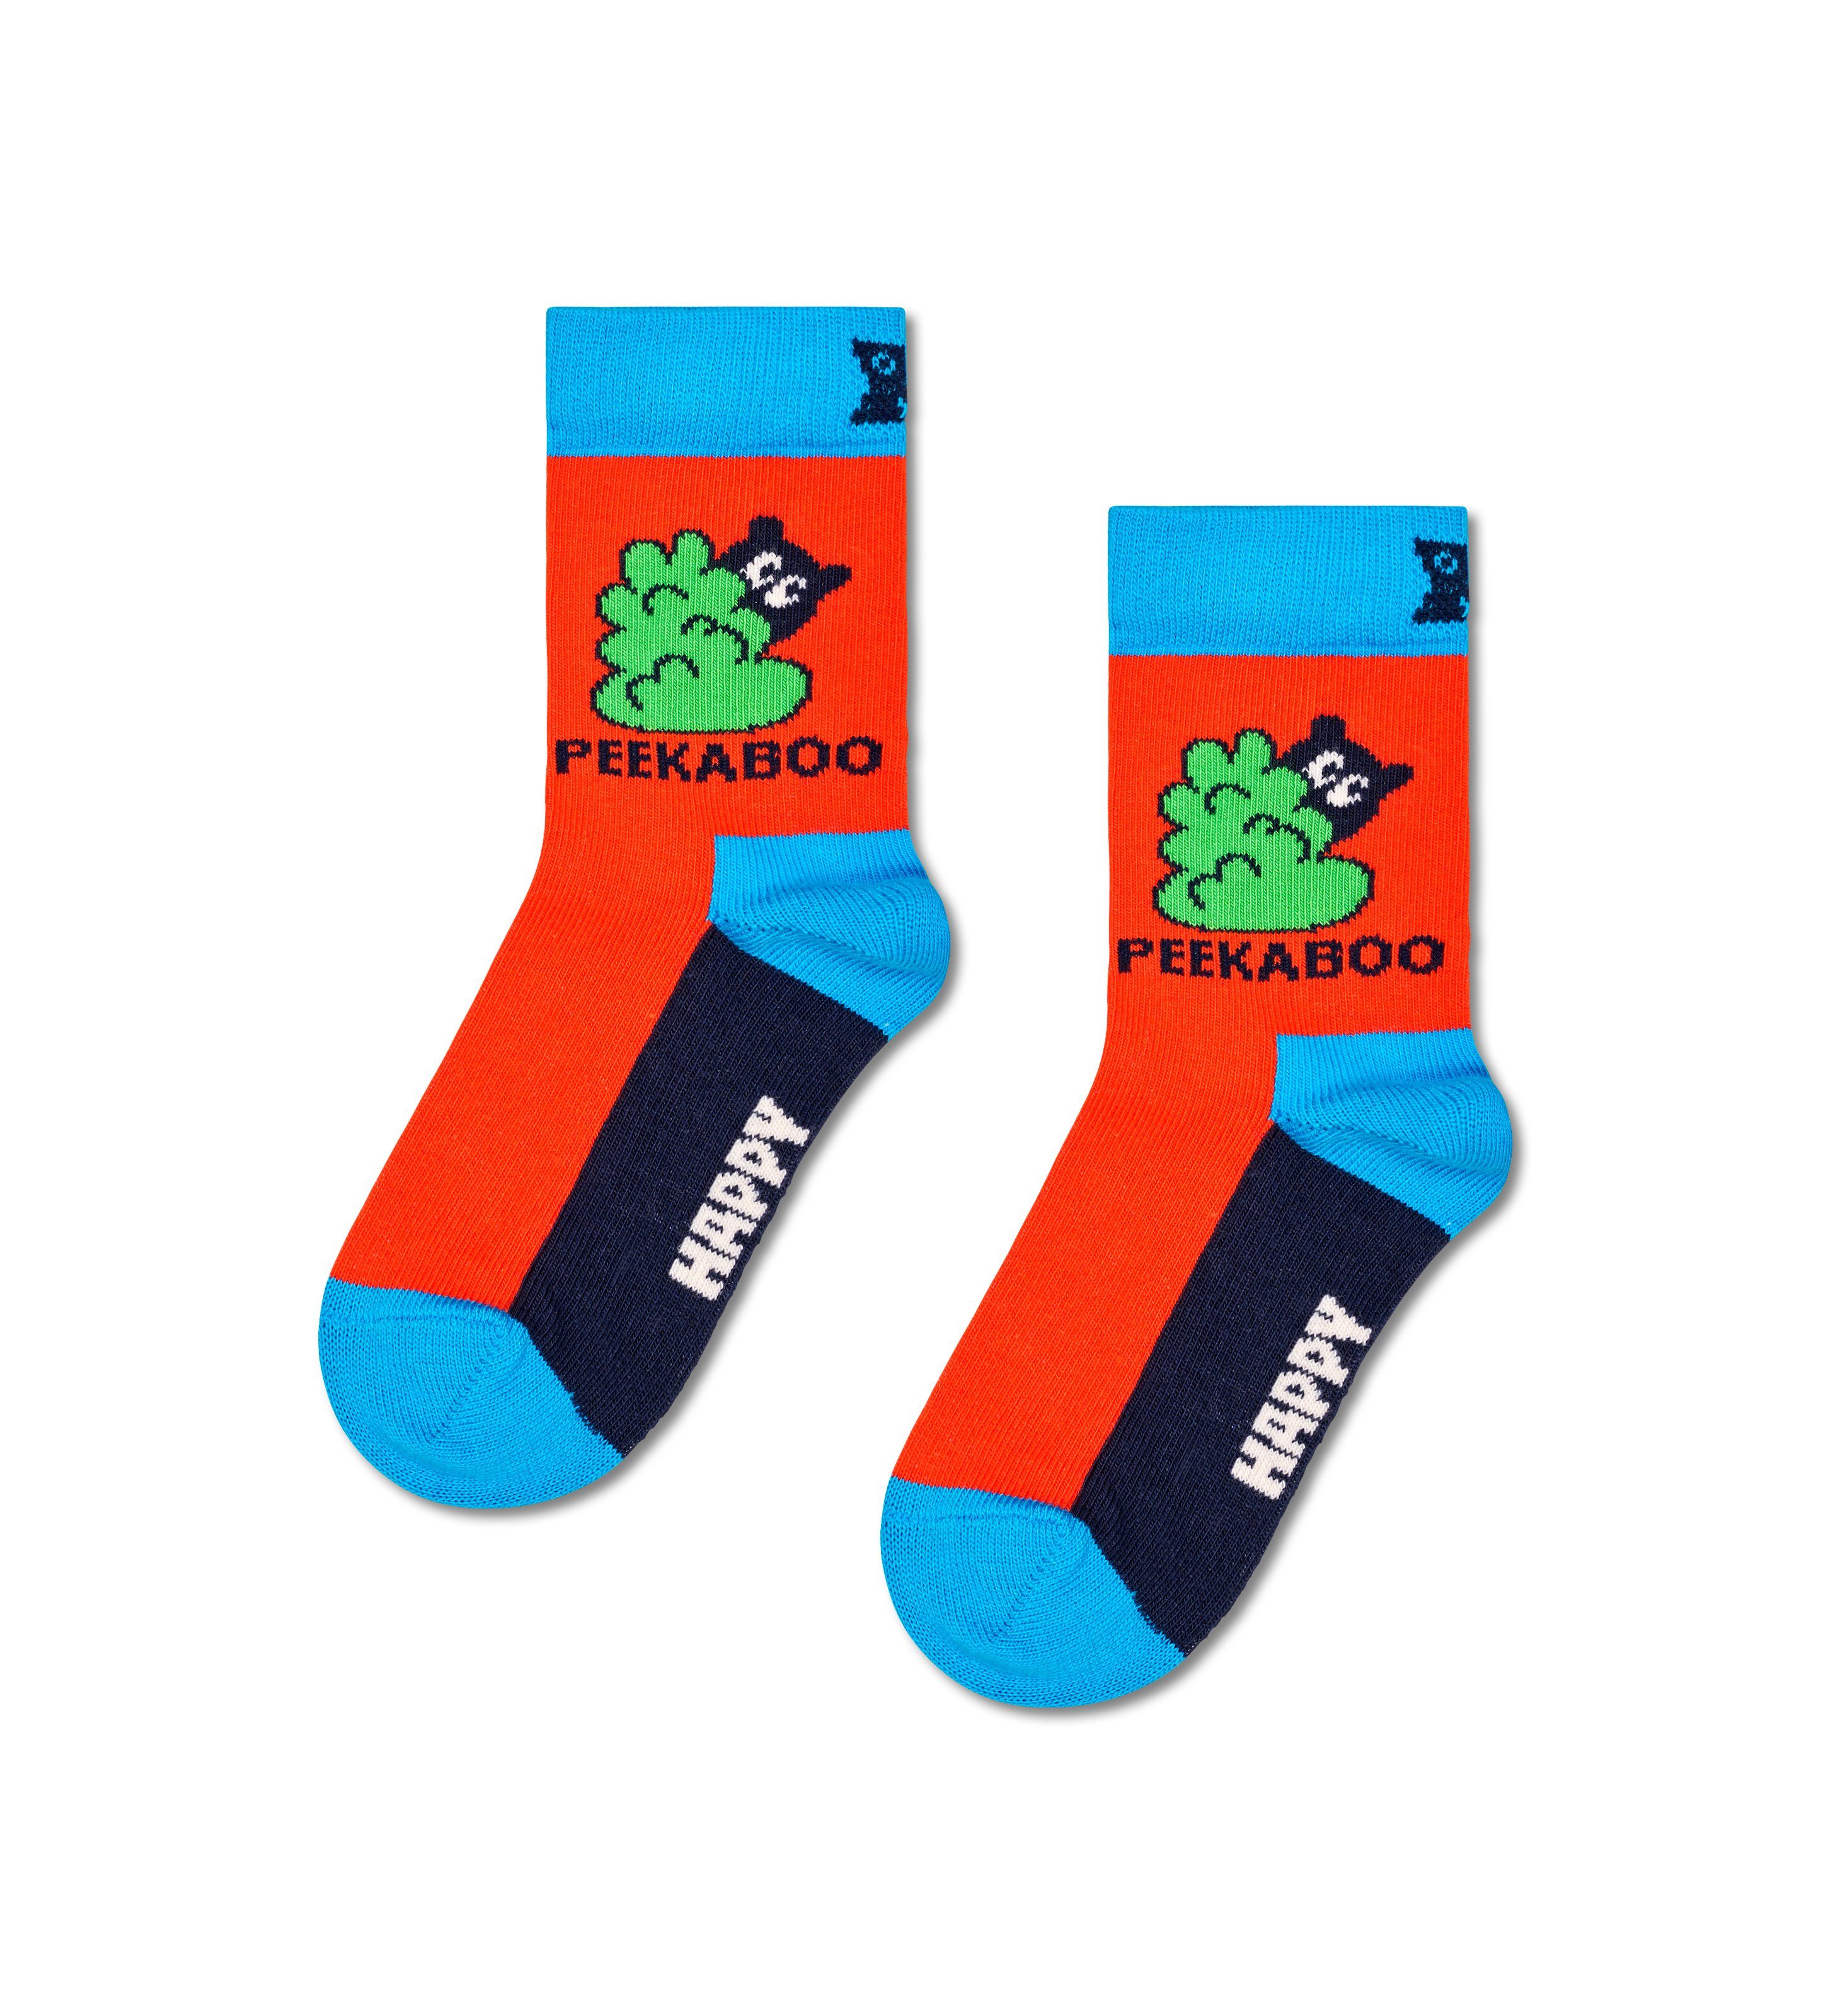 Peek-A-Boo Socken Set Happy Peekaboo Socks Gift (3-Paar)